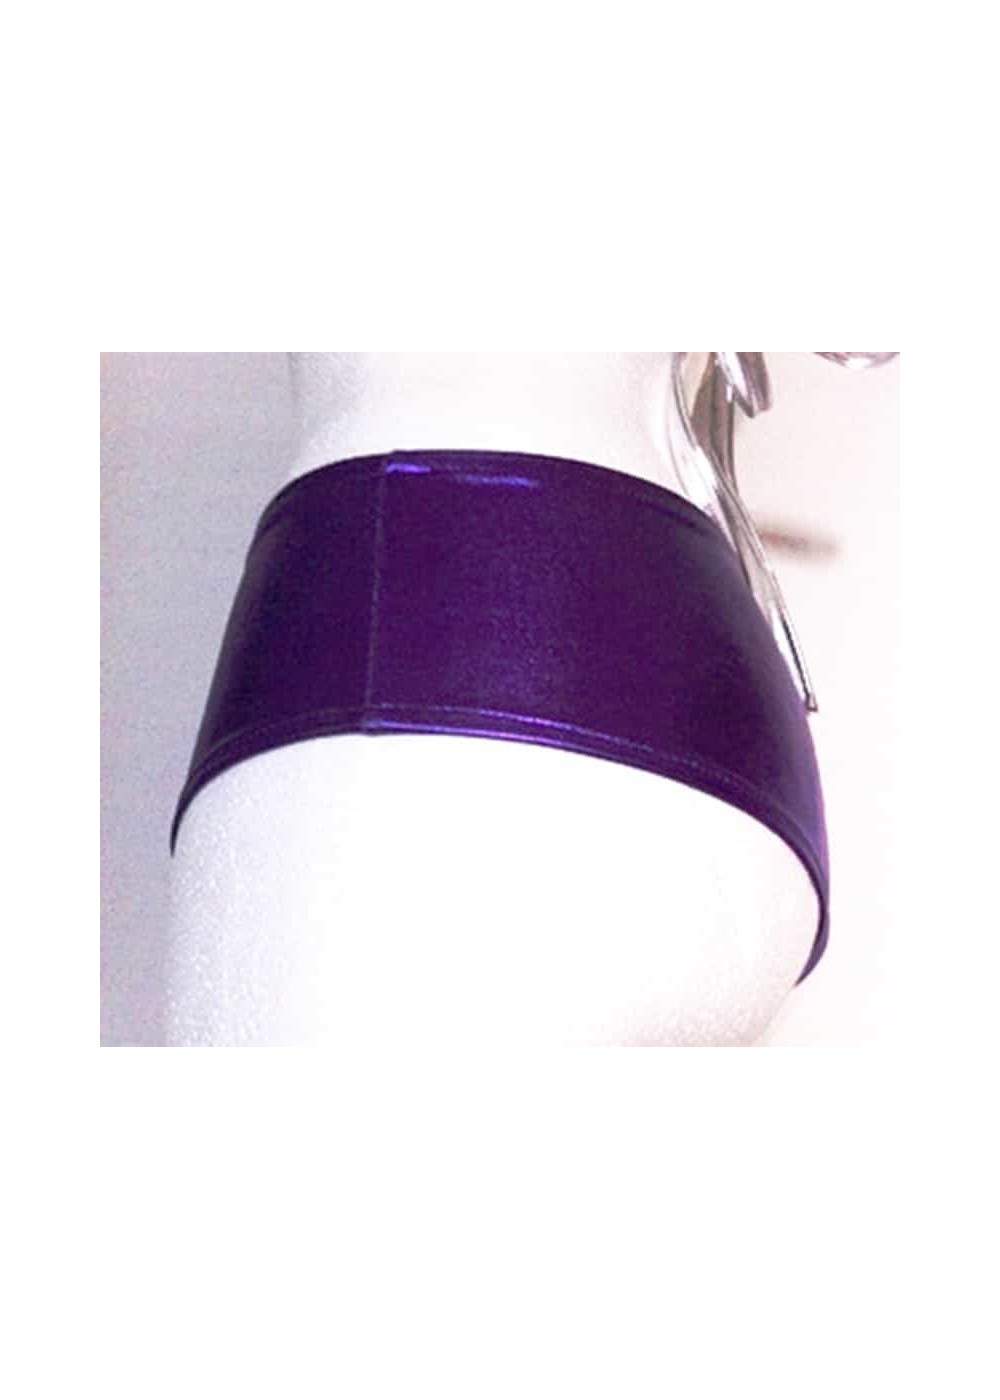 Pantalones cortos de cuero óptico púrpura metalizado Tallas 34 - 42 - 